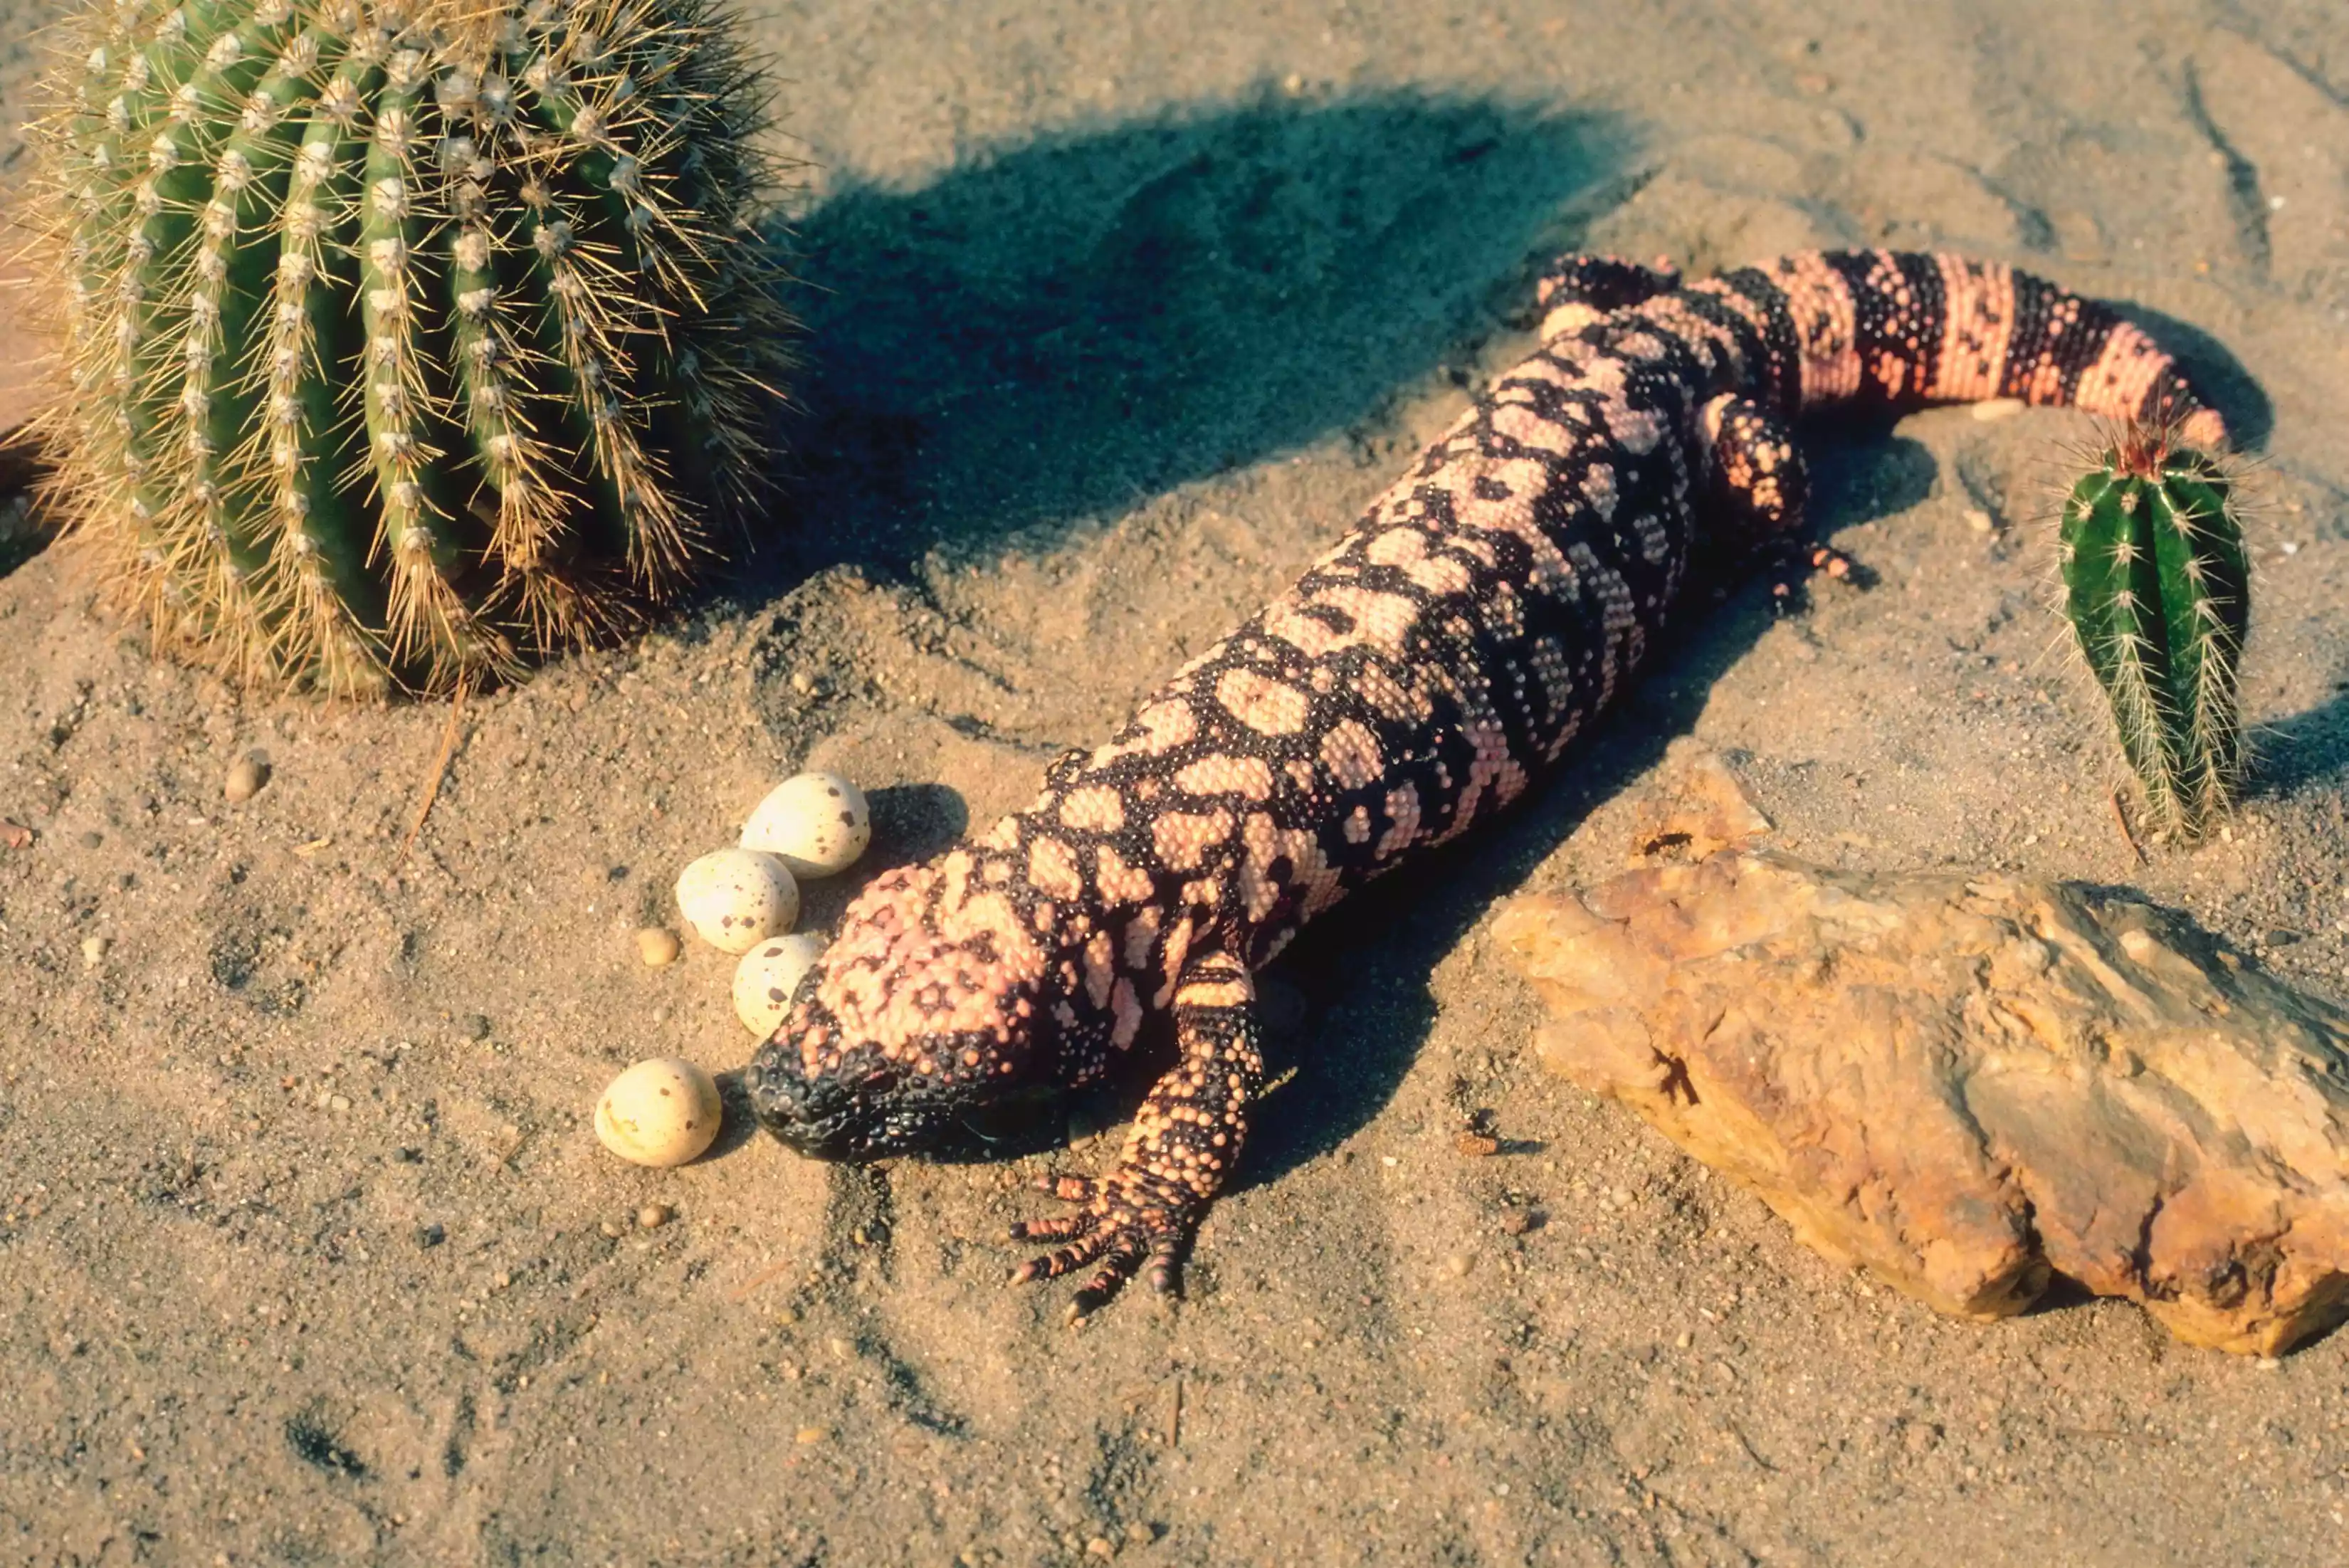 Gila monster and eggs in the desert